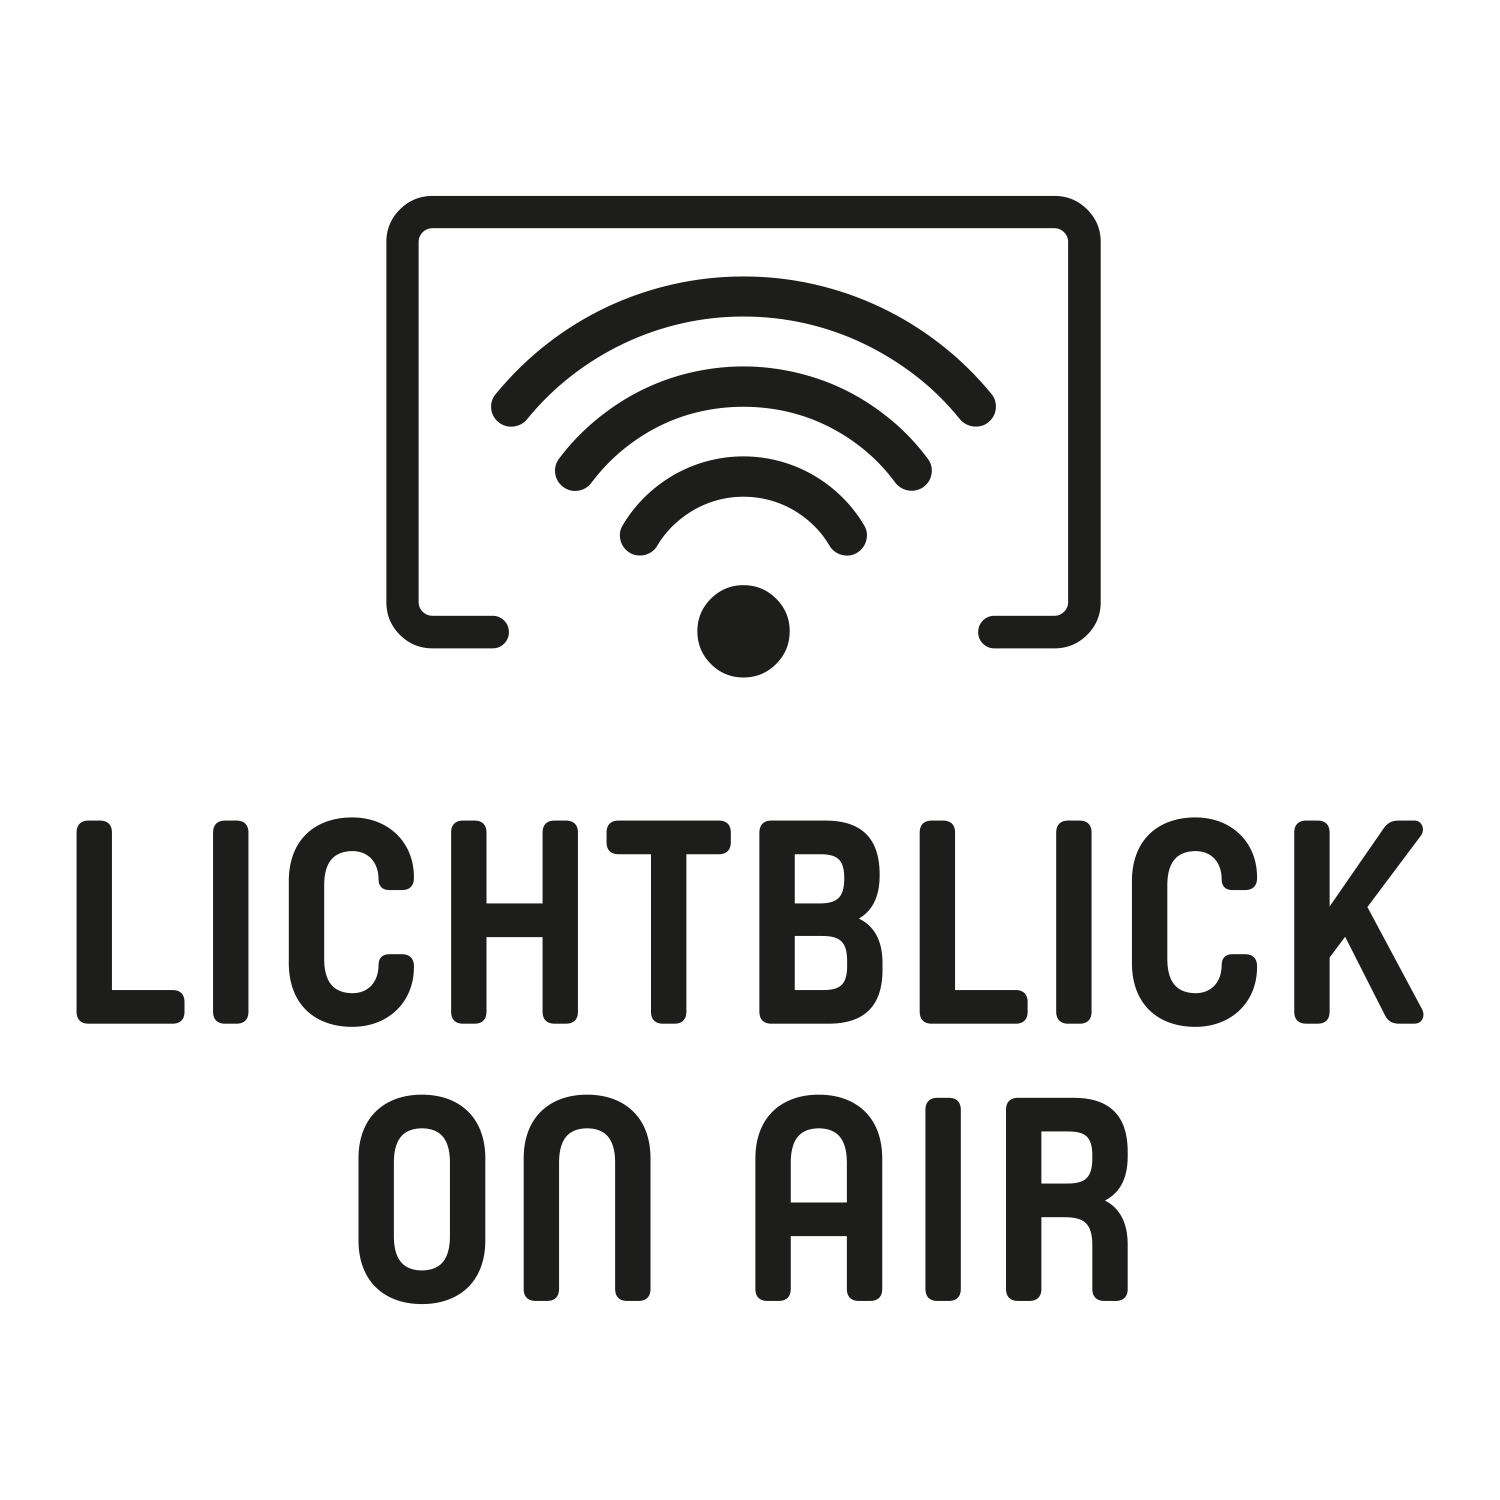 Lichtblick on Air - Der Kinopodcast